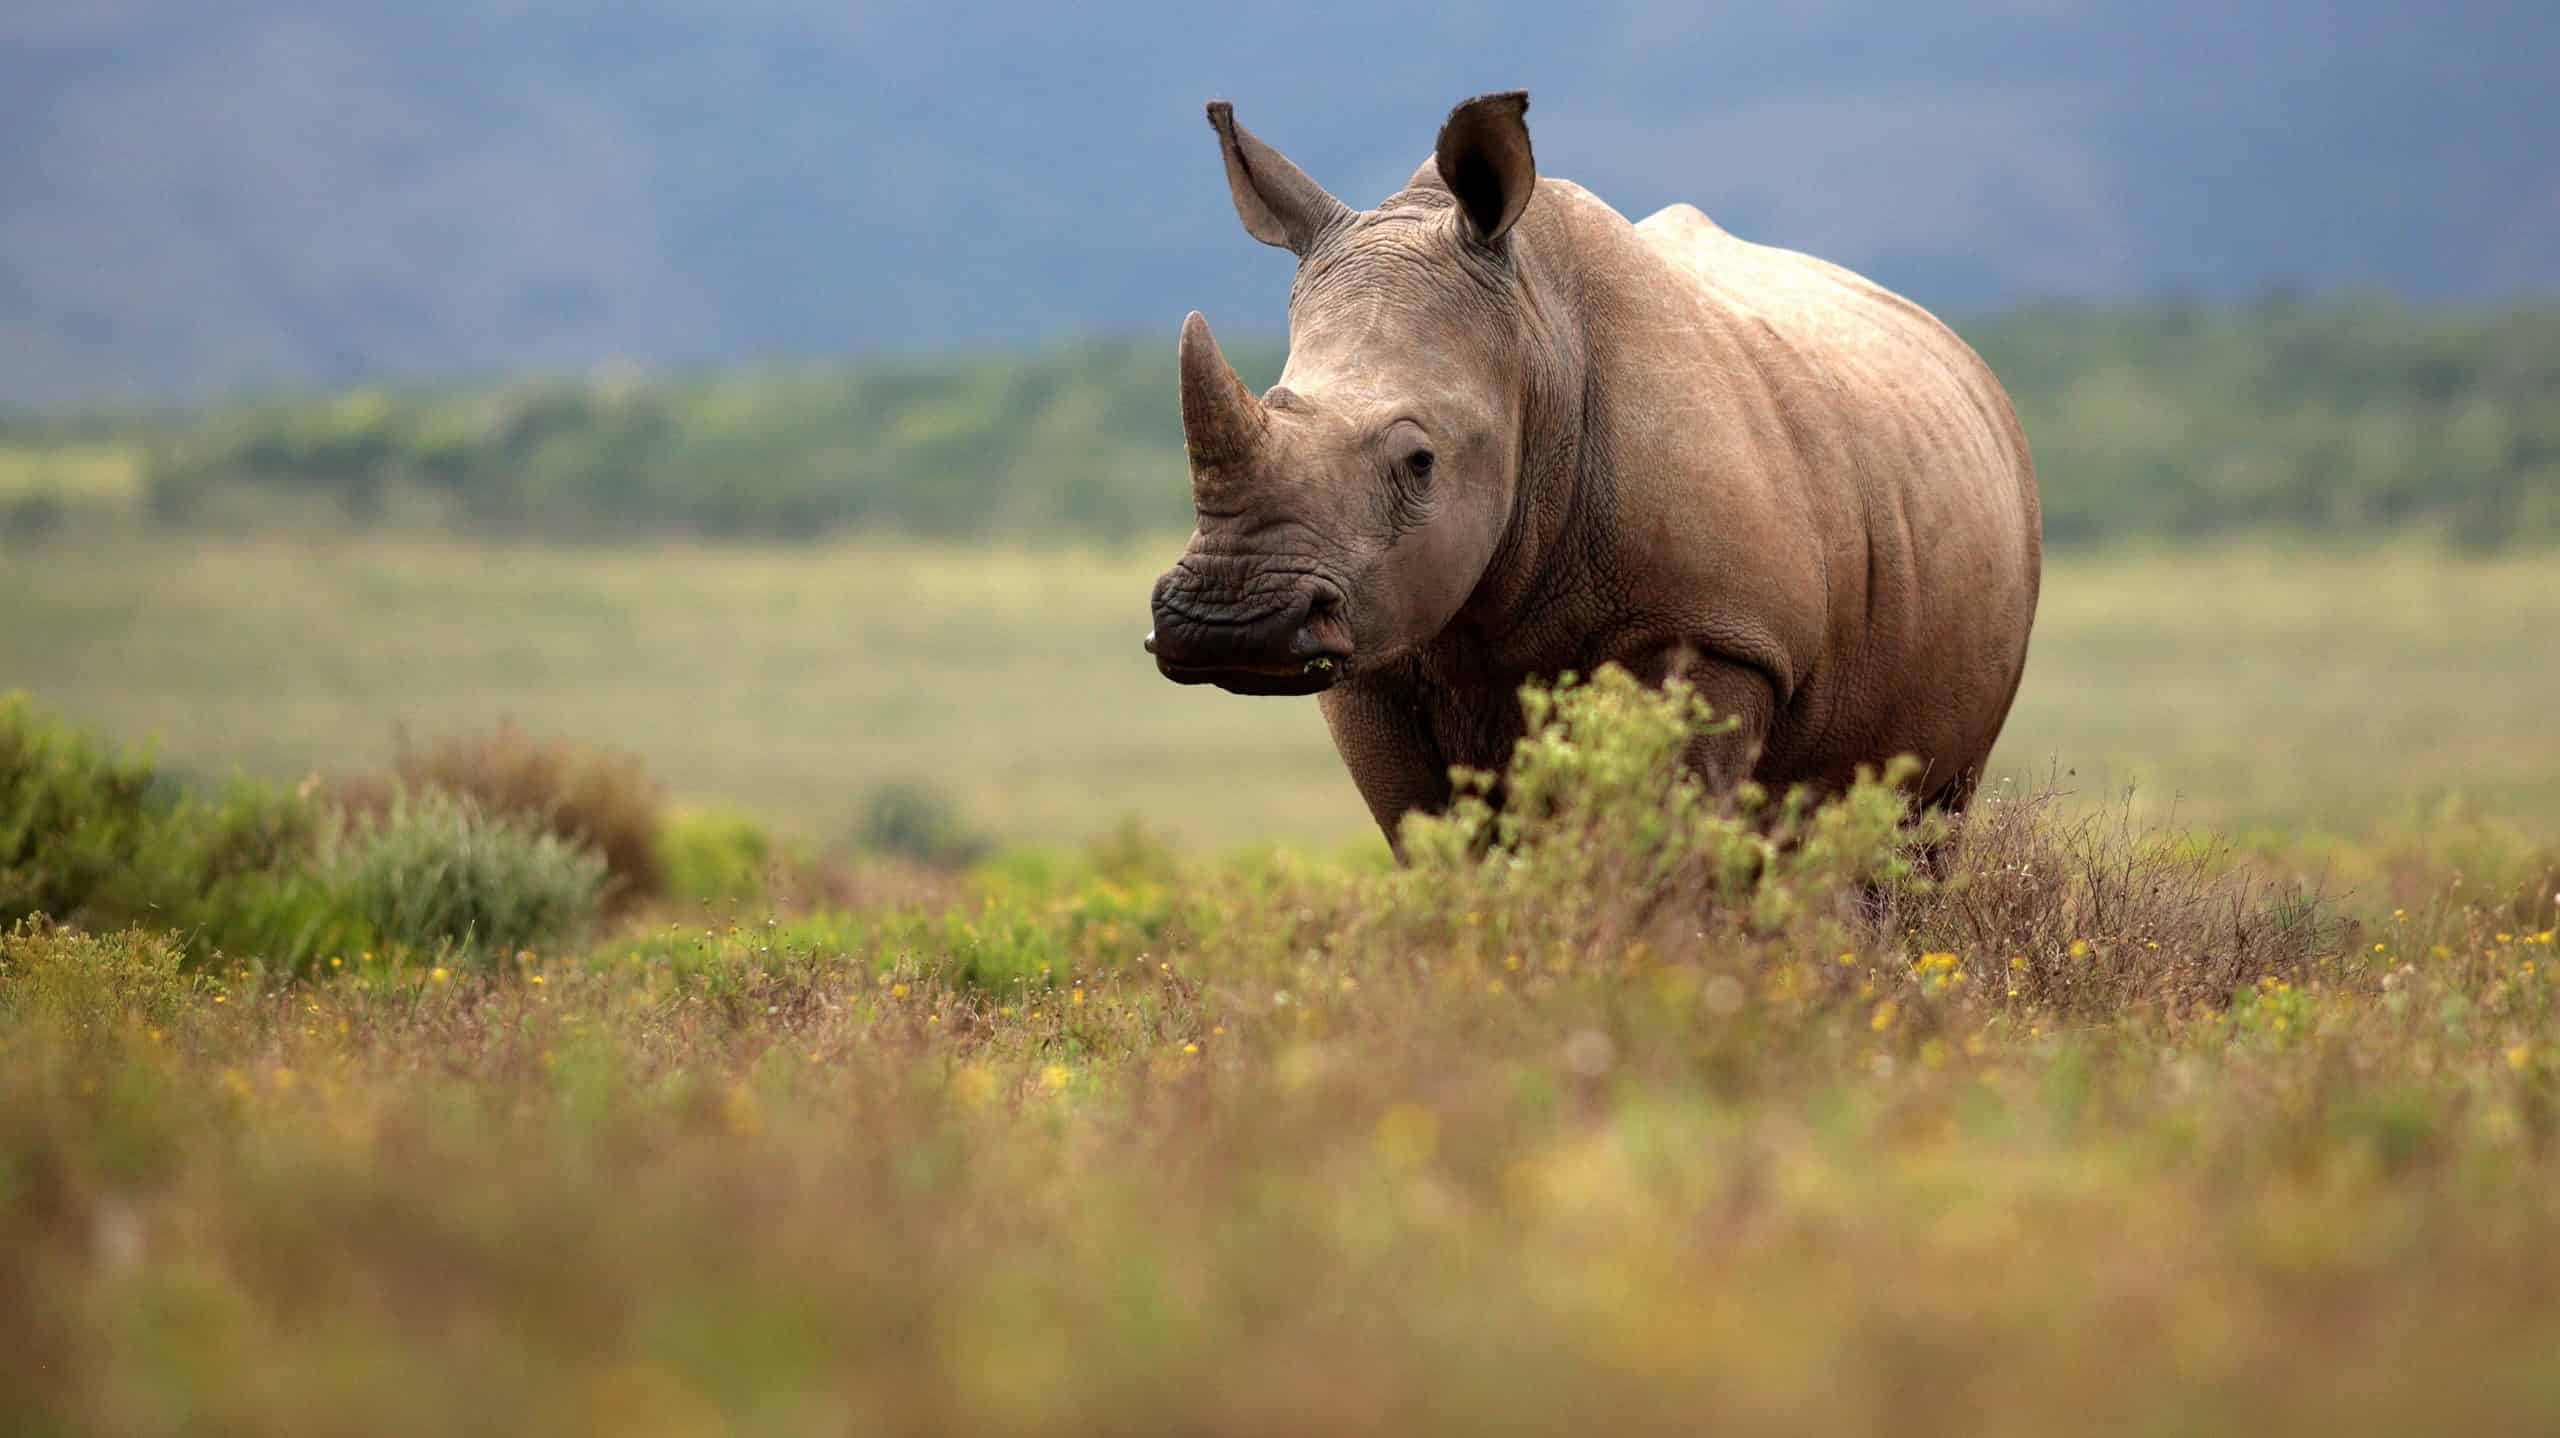 Rhino looking at camera